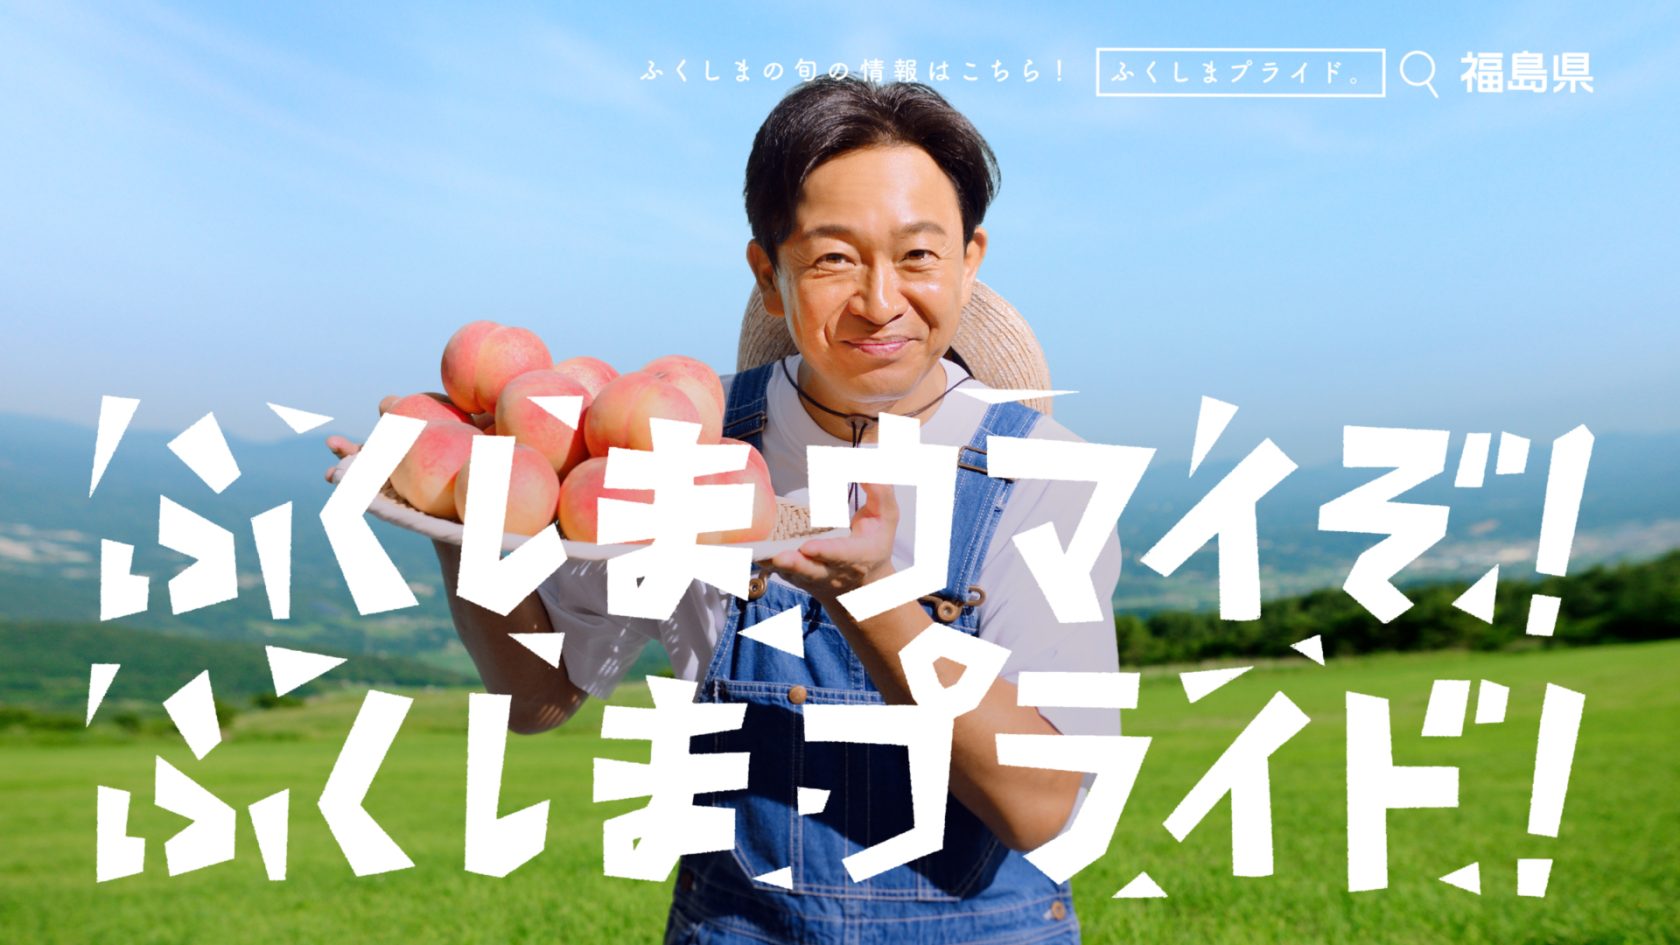 TOKIOの城島茂と国分太一が出演する「ふくしまプライド。」の新CMがスタート 福島県産の農林水産物をPR